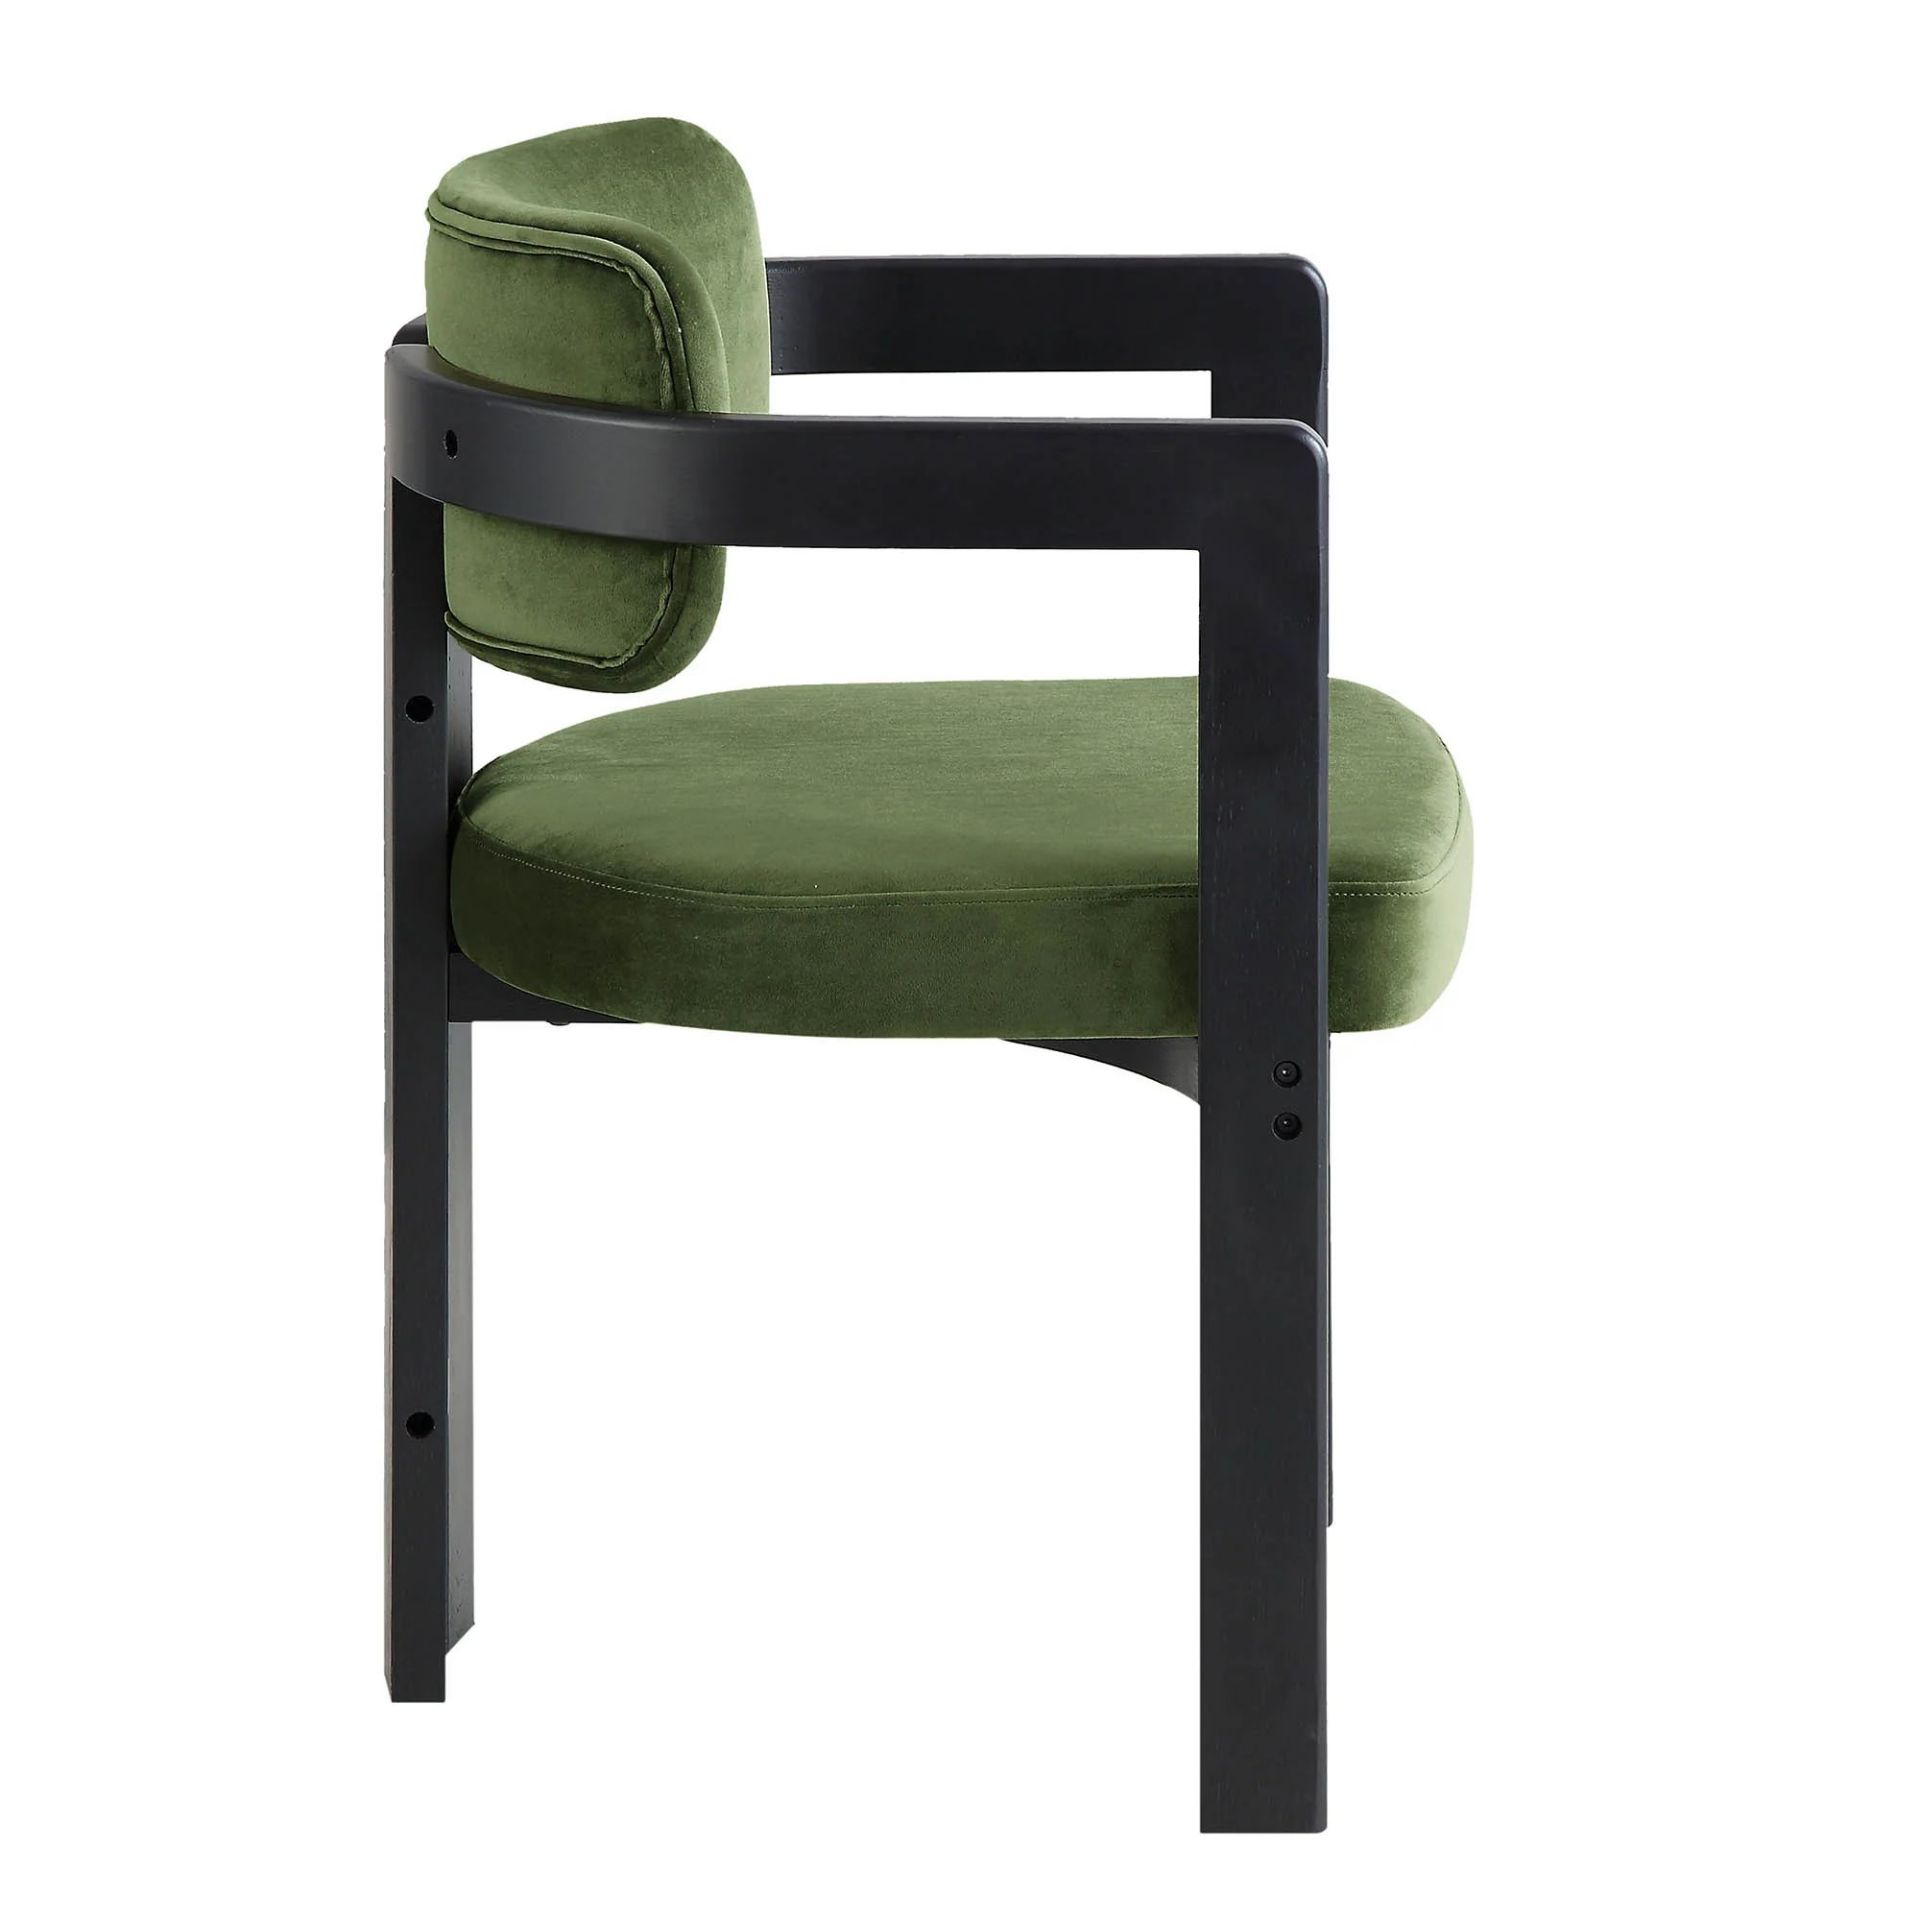 Stanford Curved Oak Frame Upholstered Chair, Moss Green Velvet Black Frame. - R14. RRP £239.99. - Bild 2 aus 2